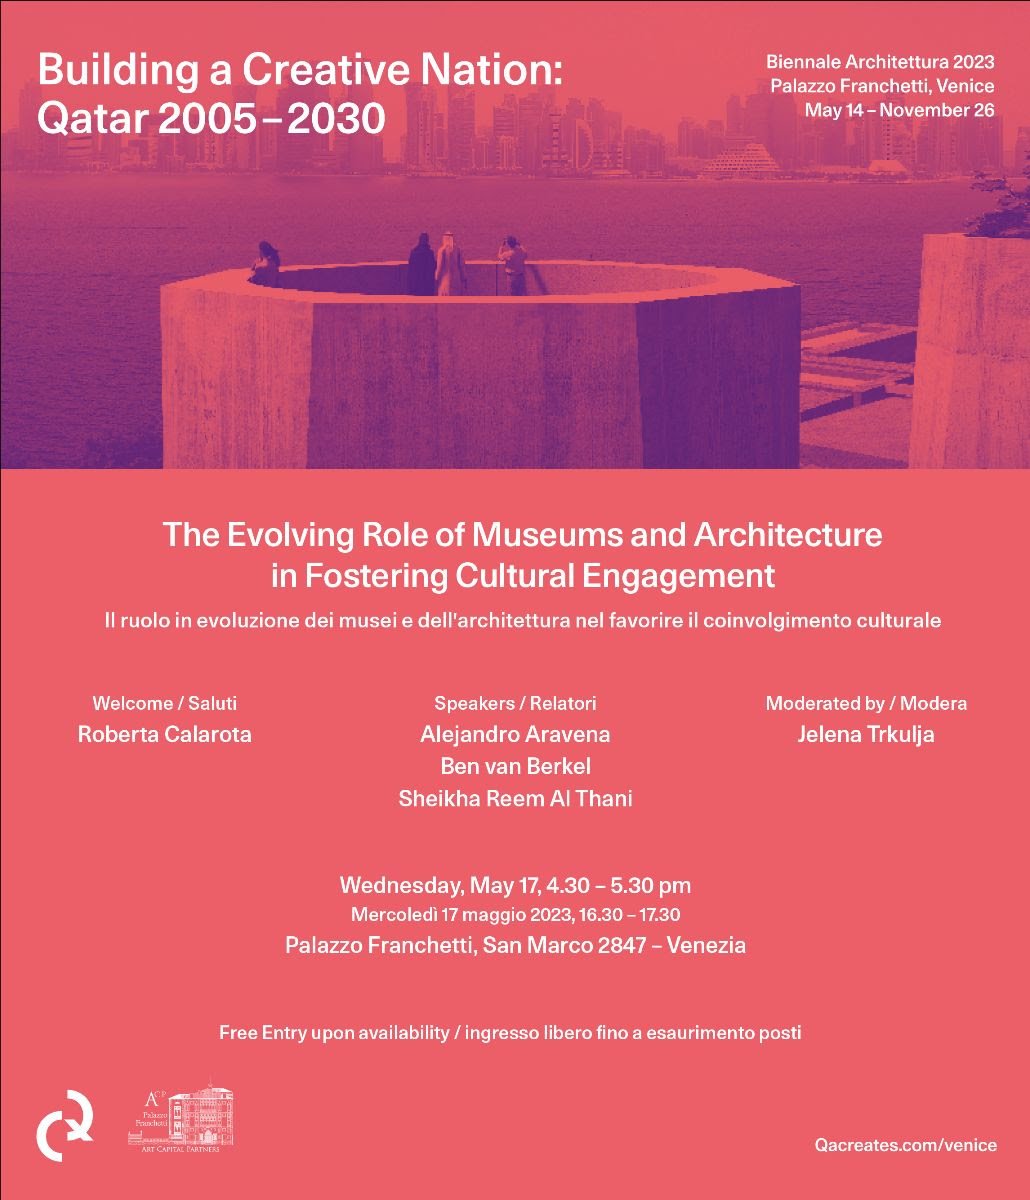 Building a Creative Nation: Qatar 2005-2030